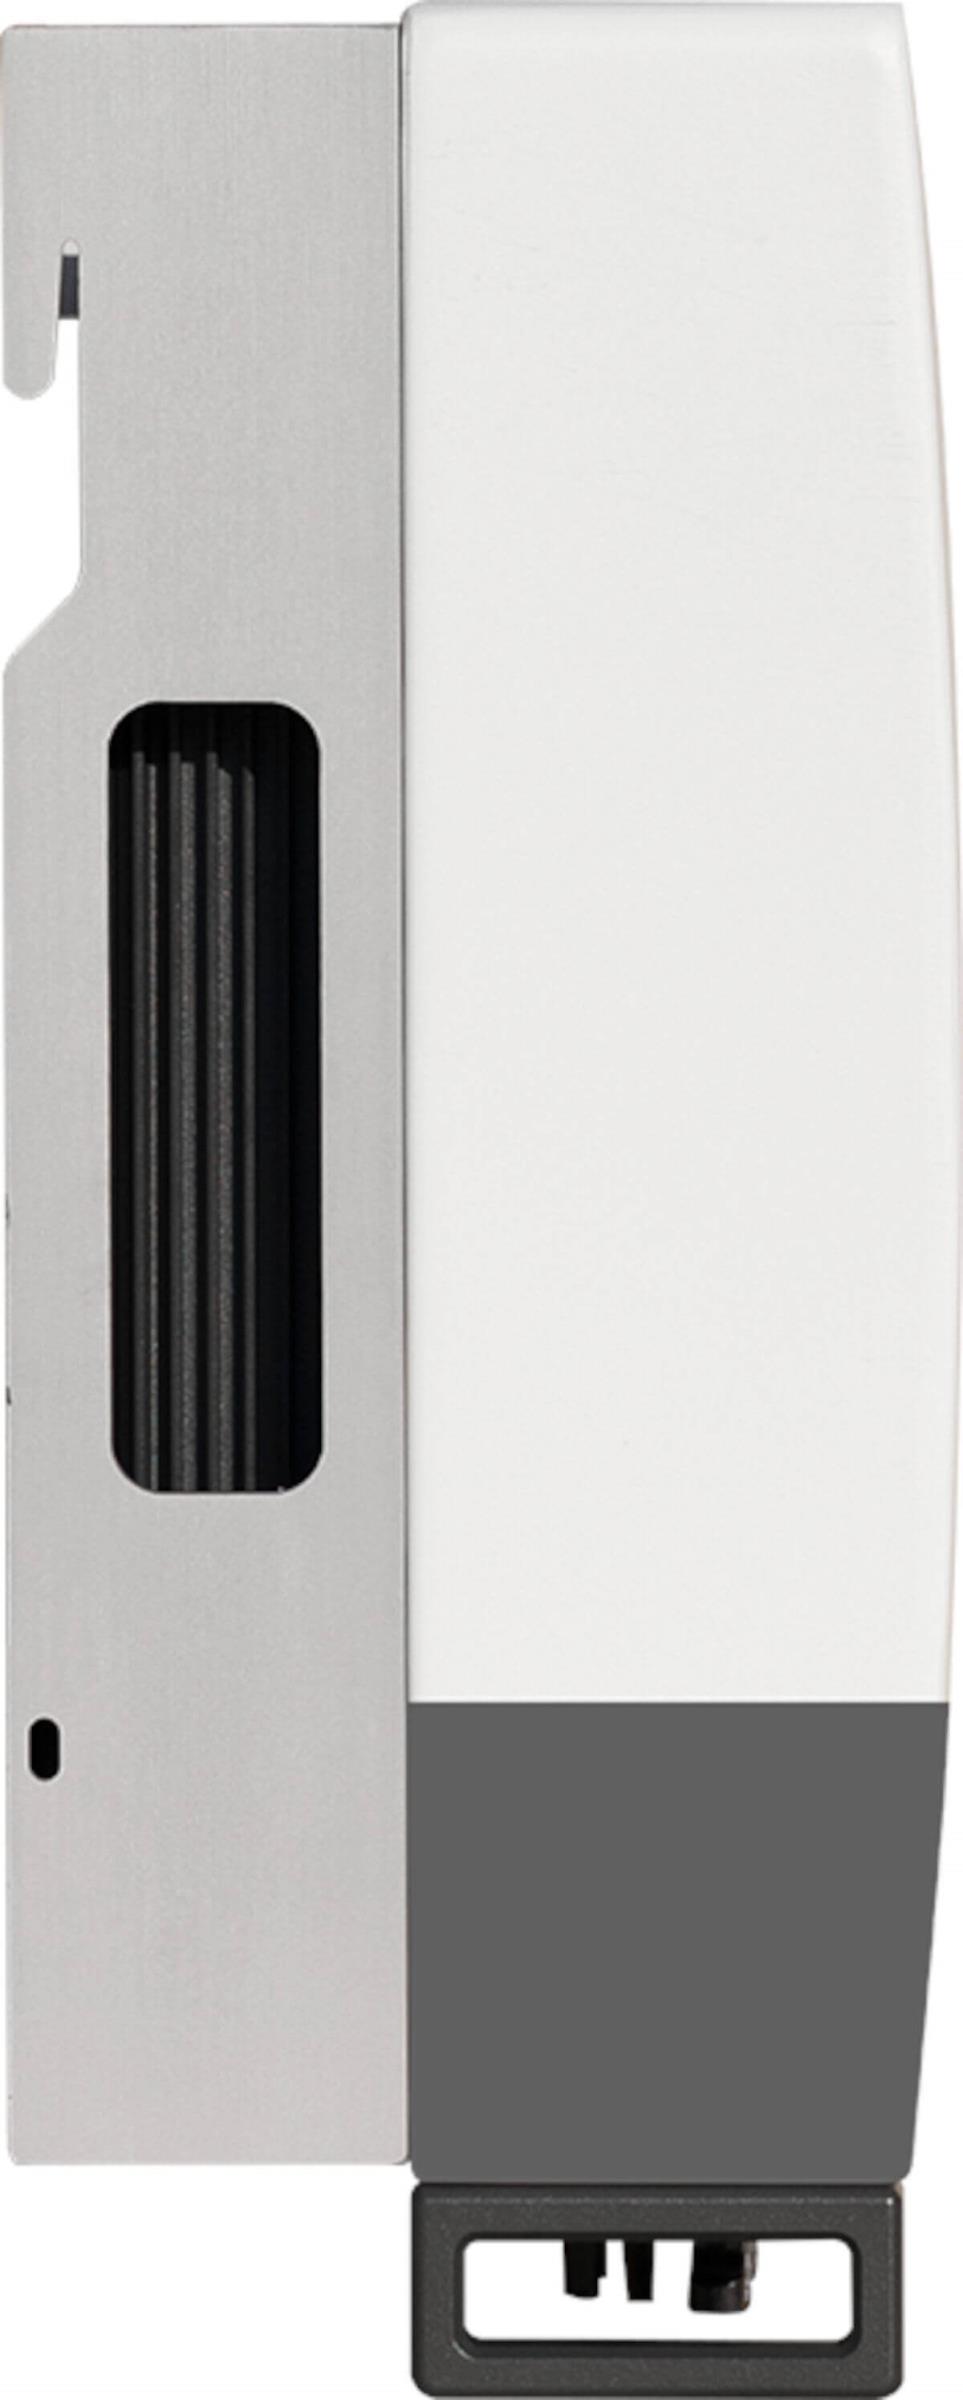 Solis Hybrid-Wechselrichter RHI-3P6K, Seitenansicht, auf weißem Hintergrund